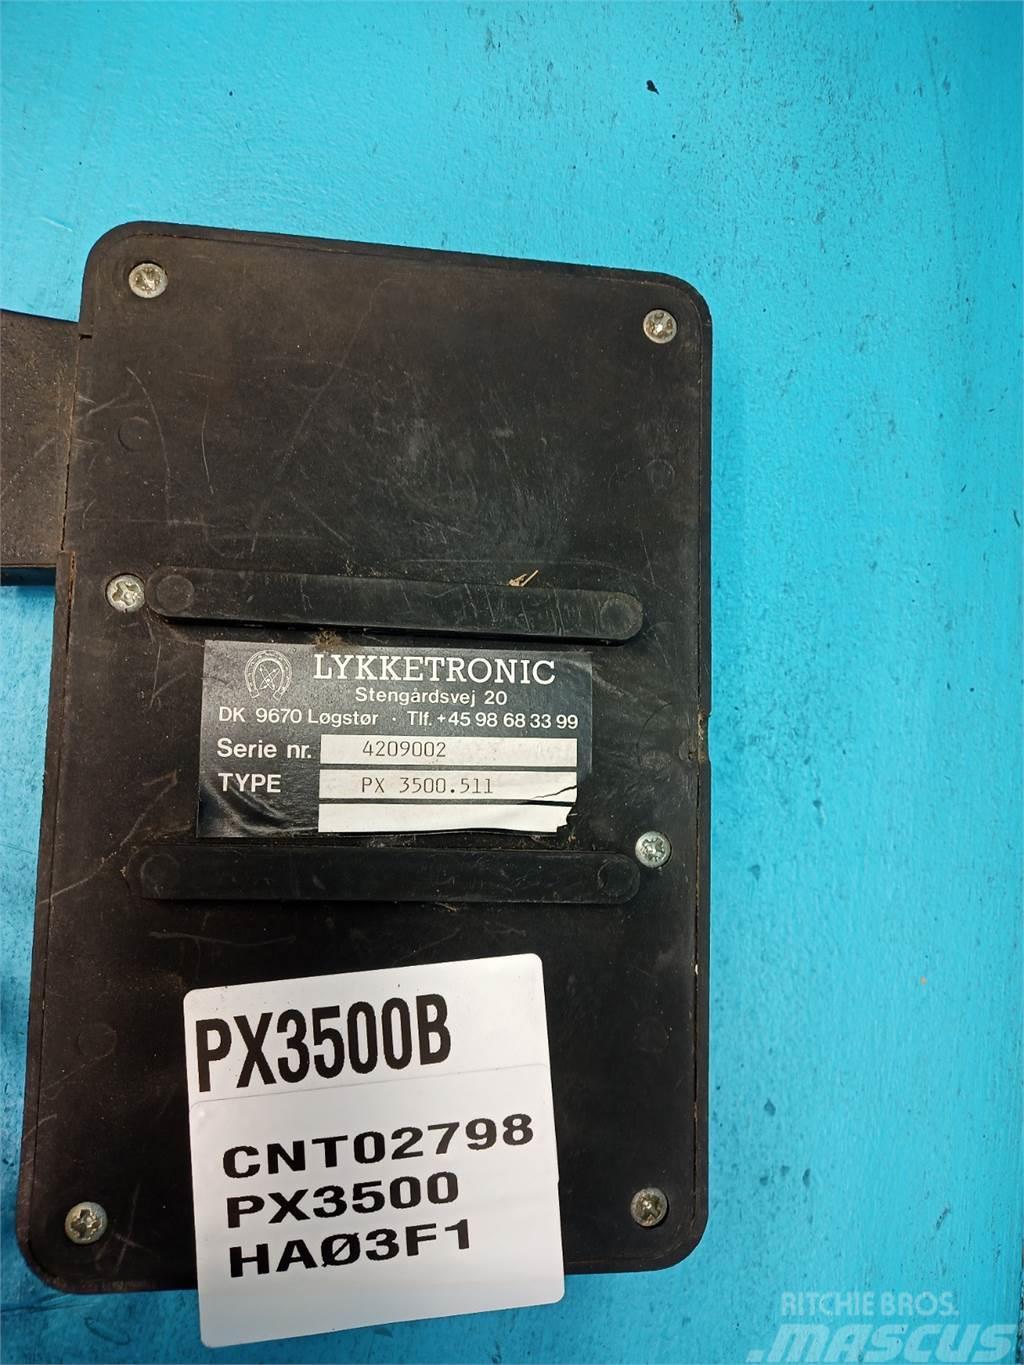  Lykketronic PX3500 Electronics